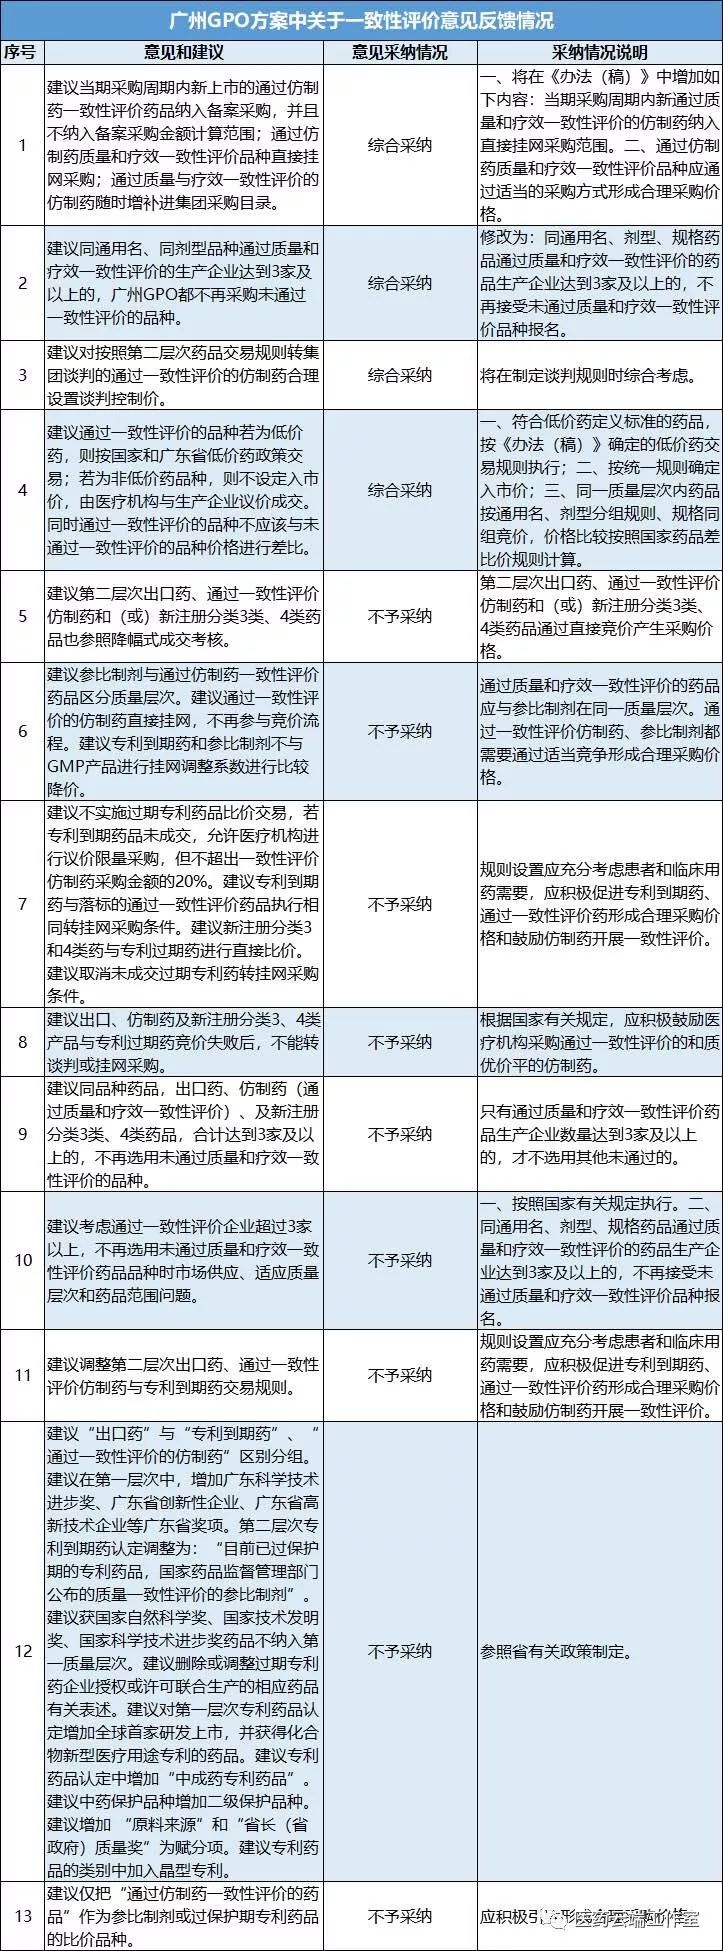 广州GPO方案，一致性评价情况存争议